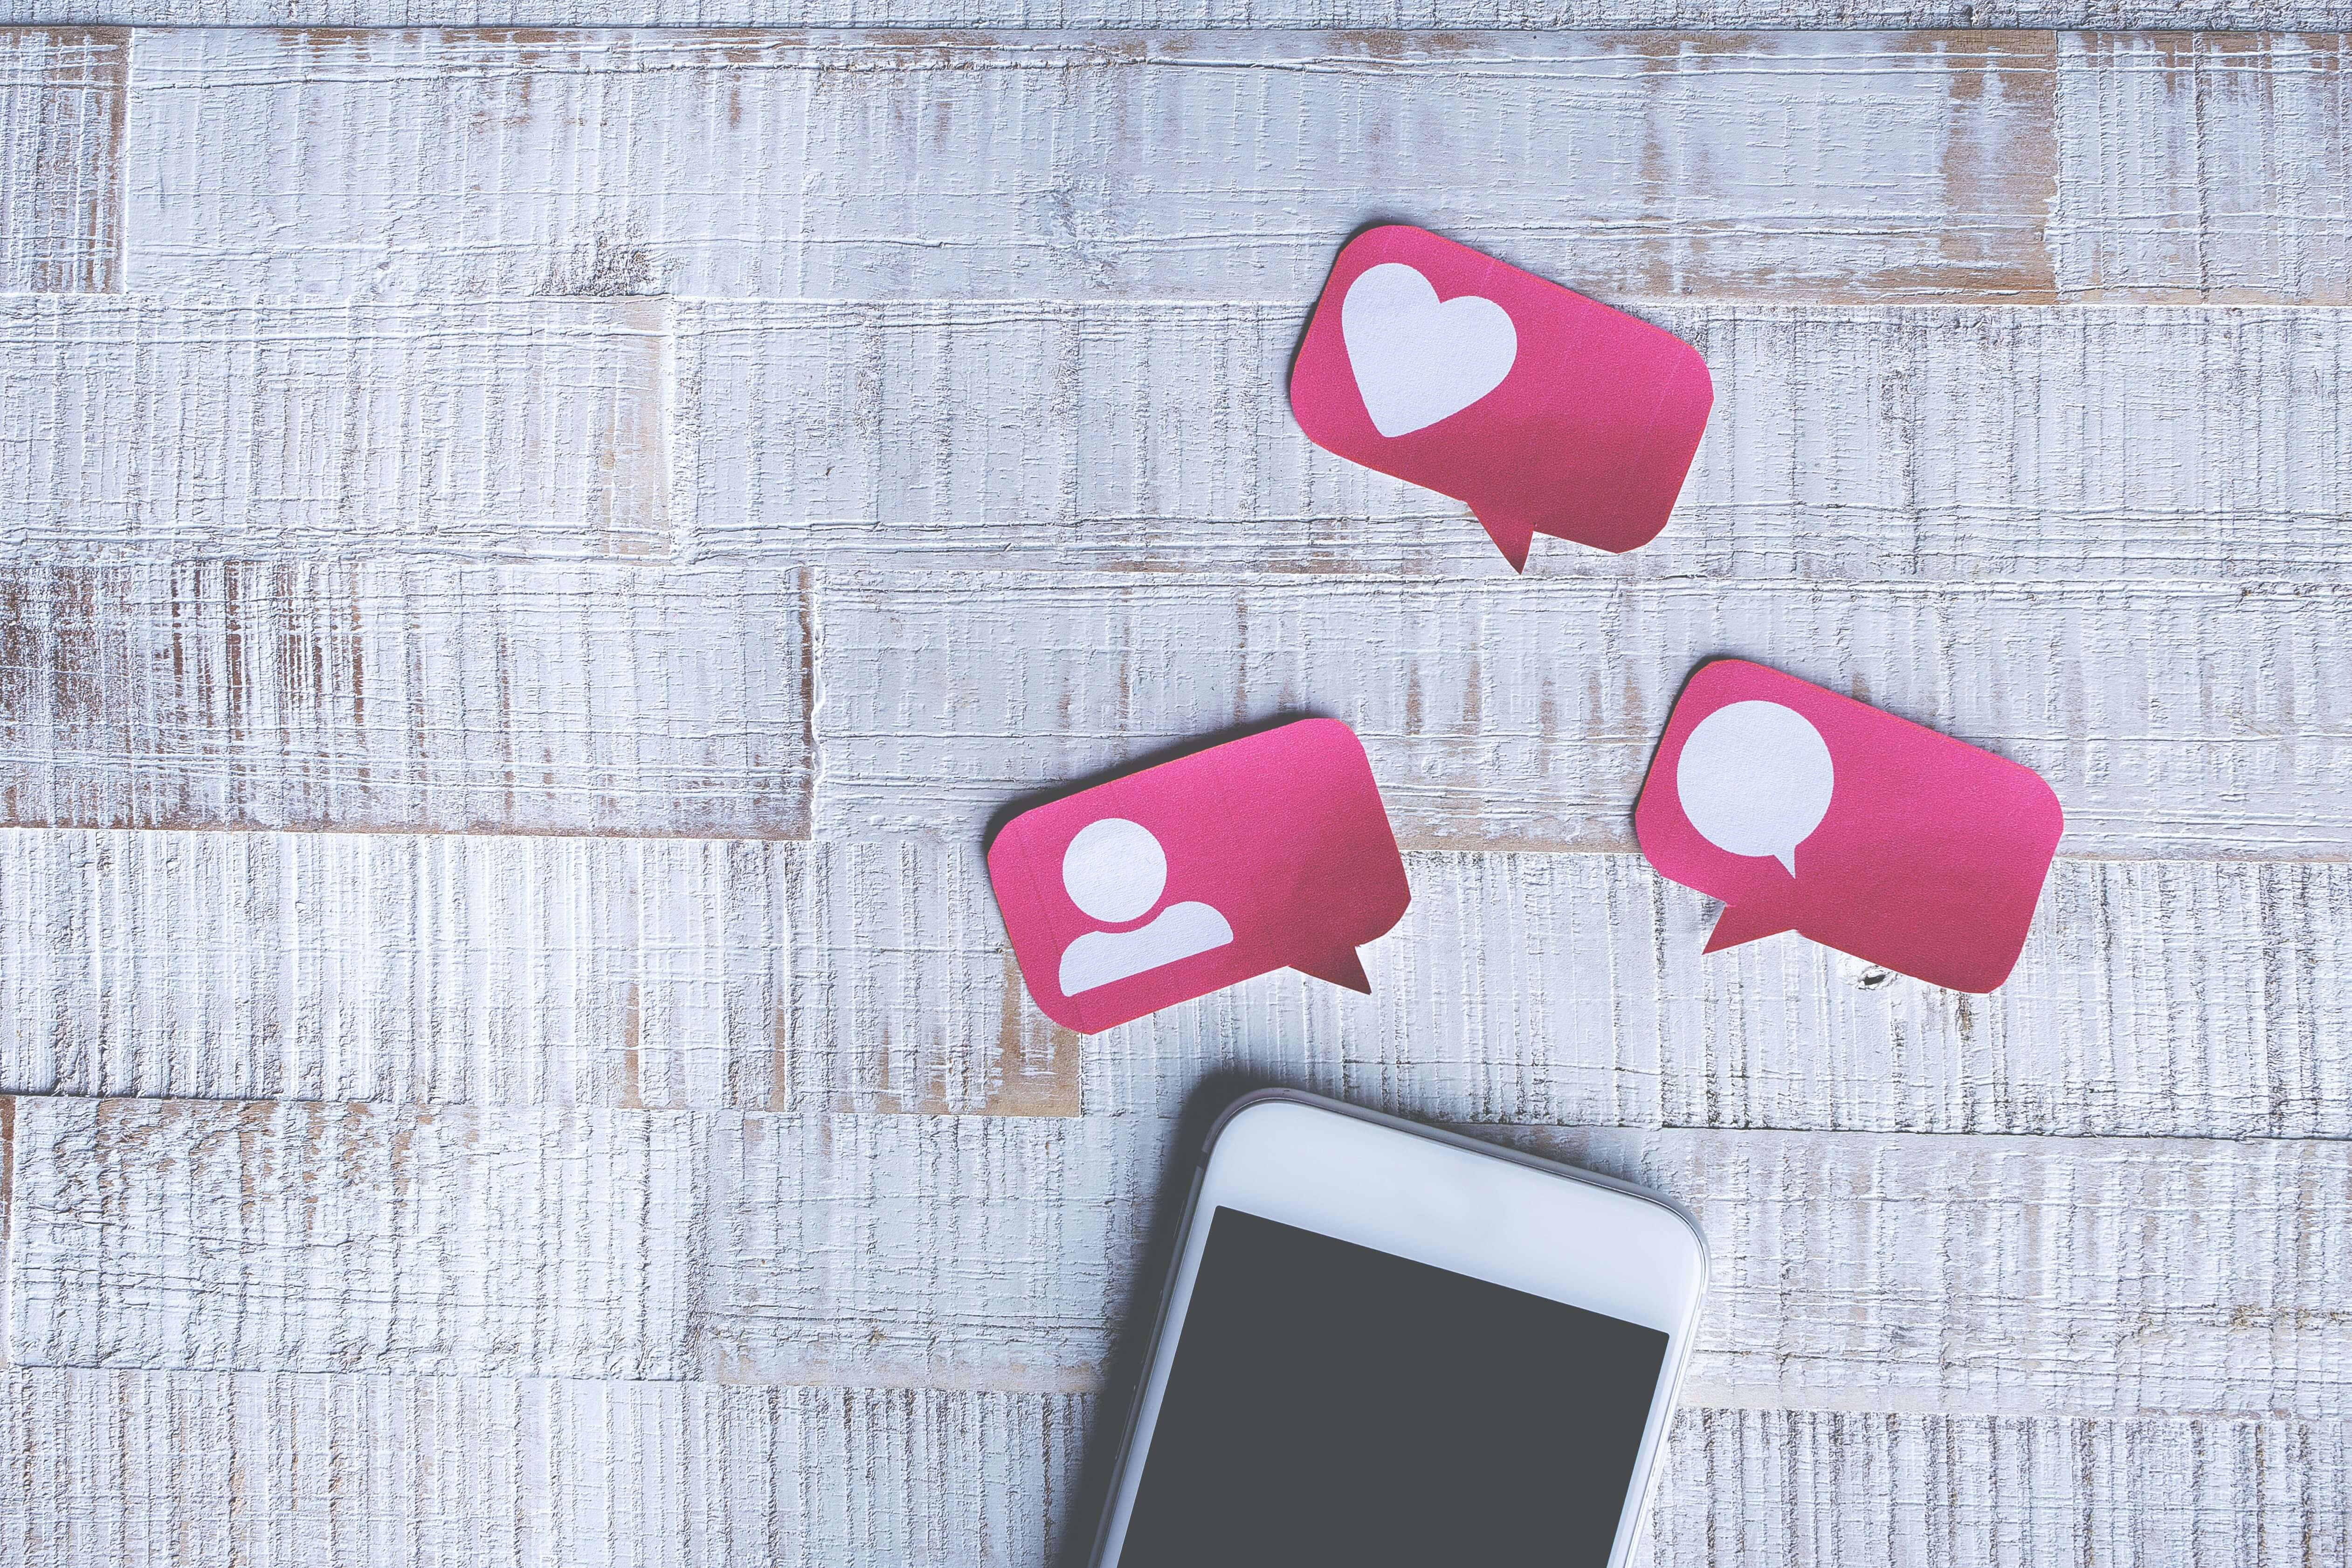 Smartphone op tafel met tekstballonnetjes erboven met hartje, persoontje en tekstballonnetje